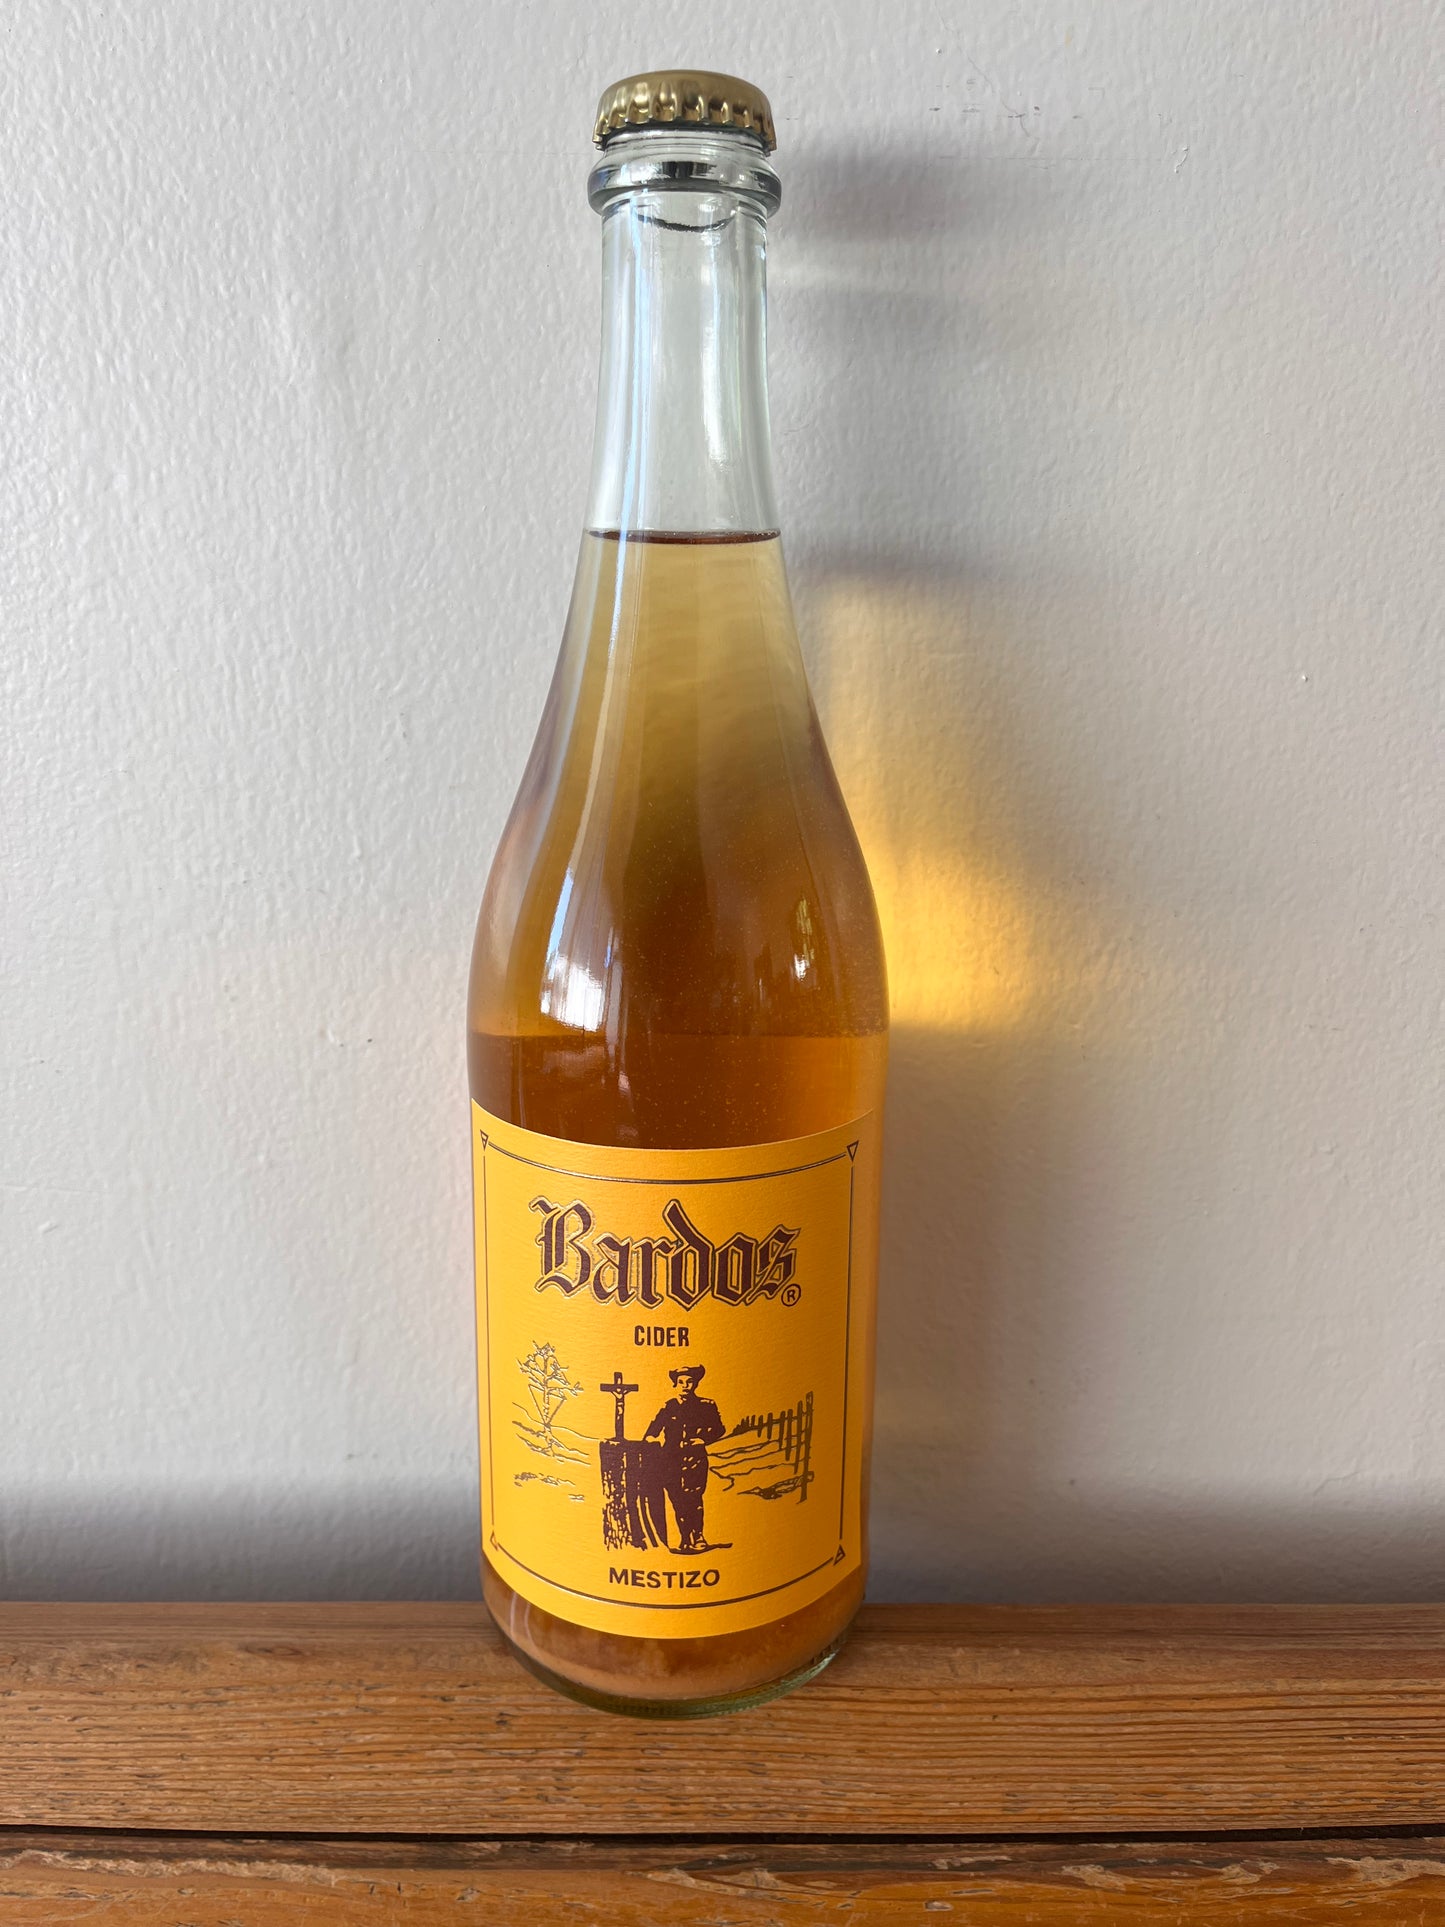 Bardos Hatch Cider